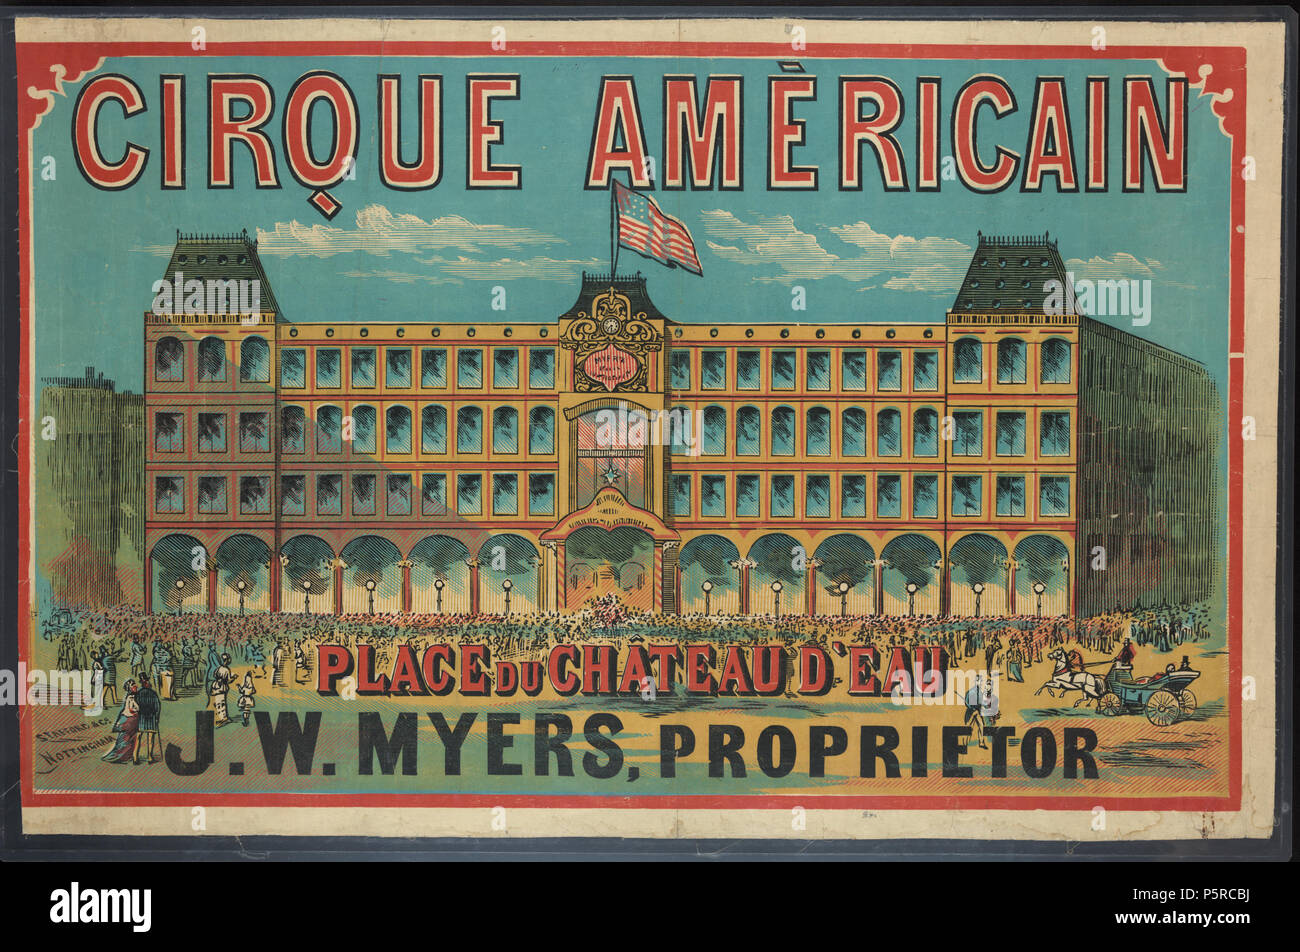 349 Cirque Américain - Place du Chateau d'Eau, J.W. Myers, proprietor Stock Photo